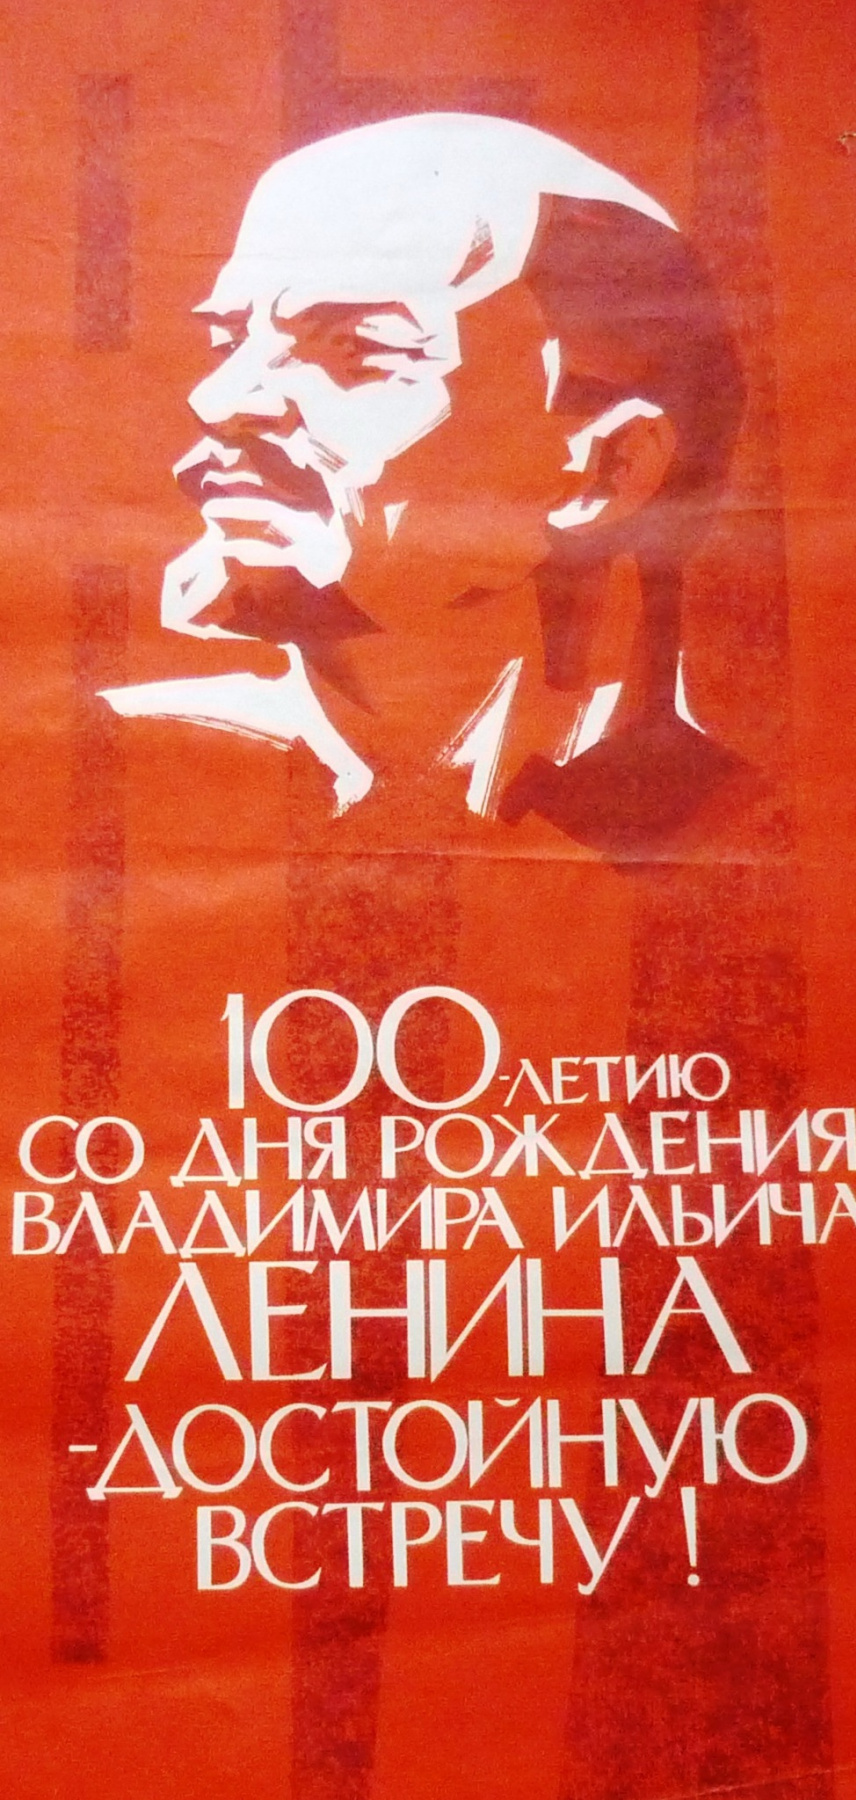 Г.Илларионов. 100-ю со дня рождения В.И.Ленина-достойную встречу!